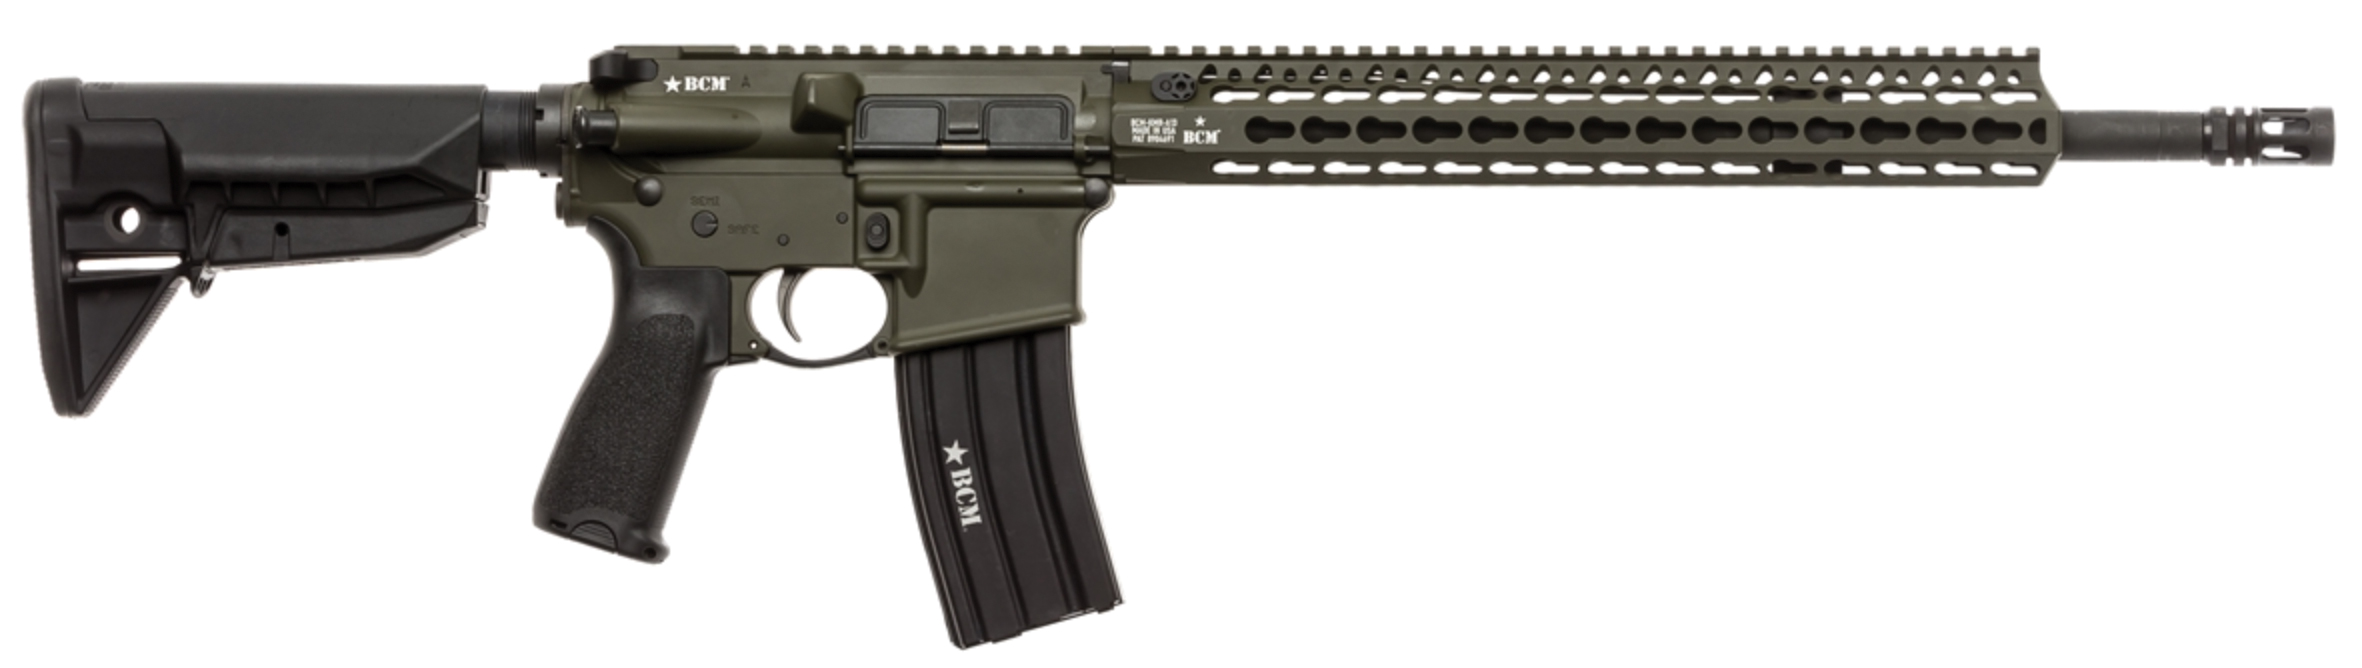 RECCE-16 KMR-A Carbine